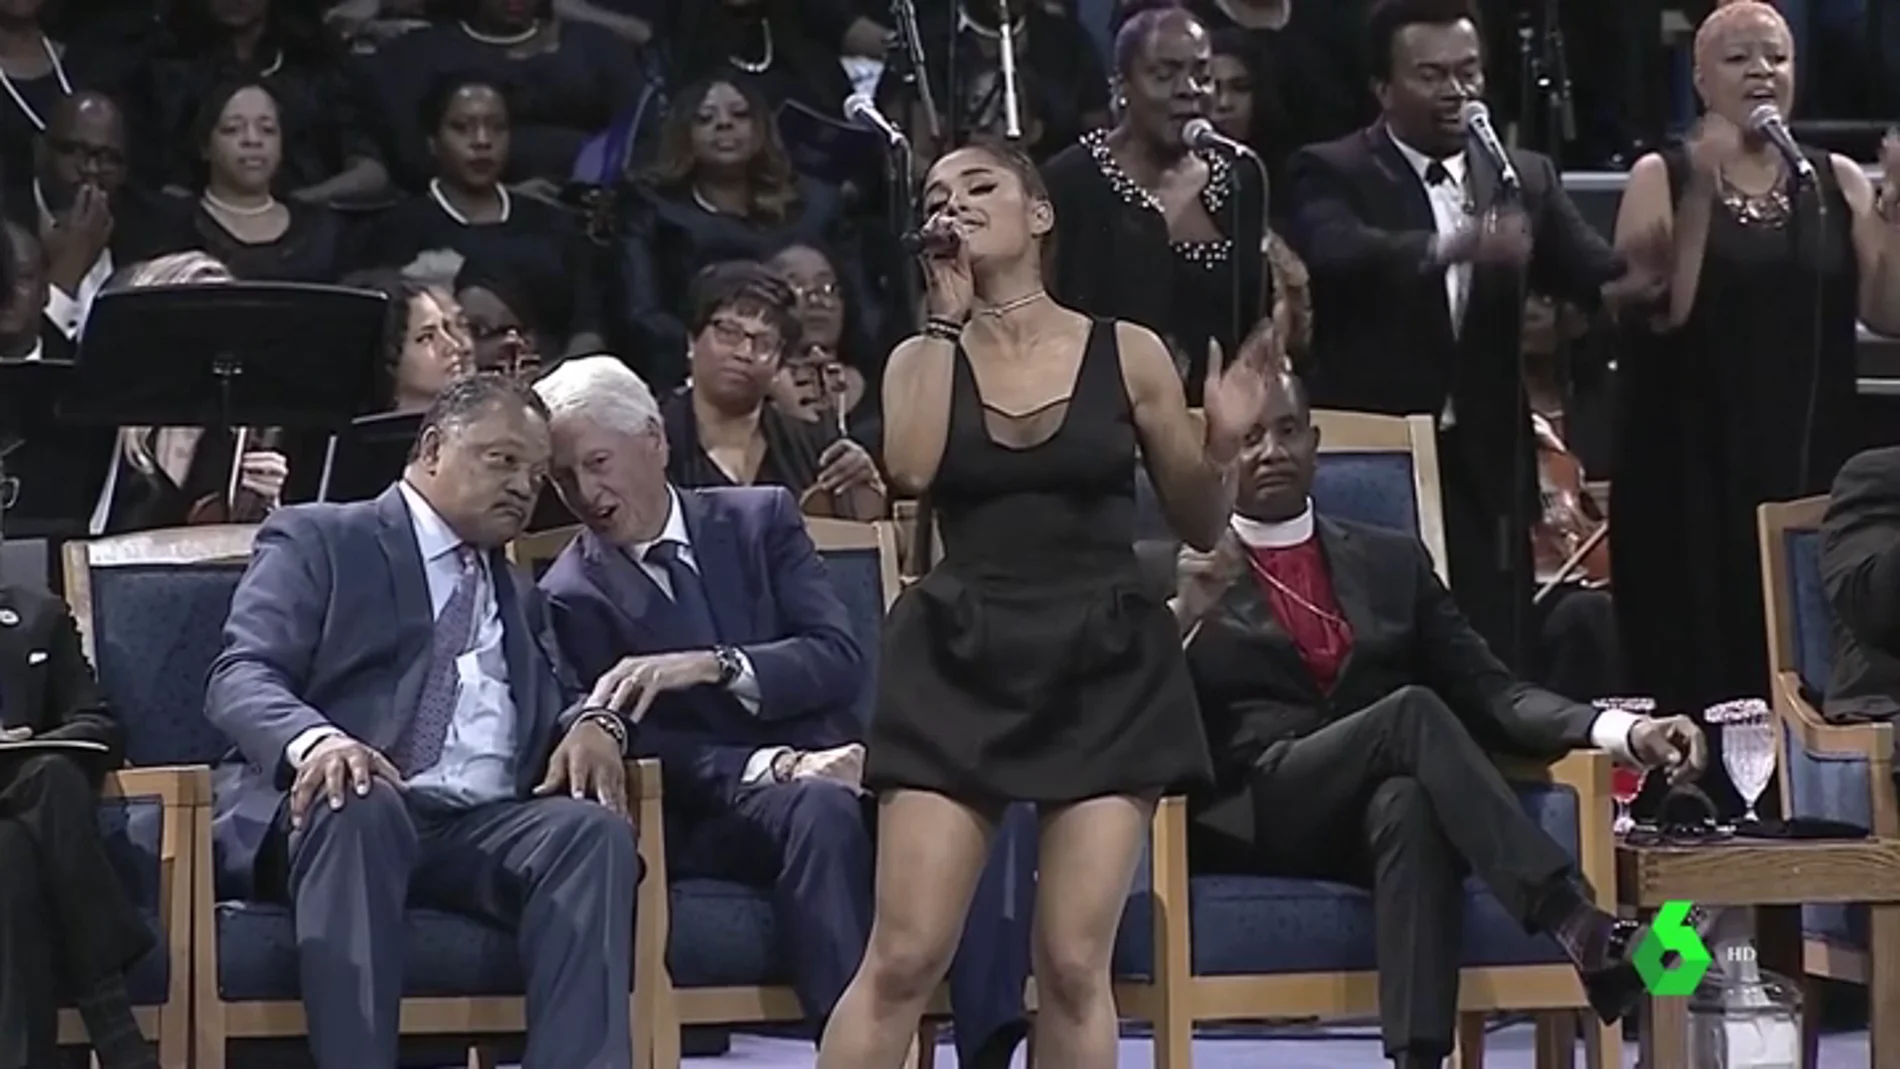 El funeral de Aretha Franklin reúne a cantantes, actores y políticos en Detroit en un tributo a su vida